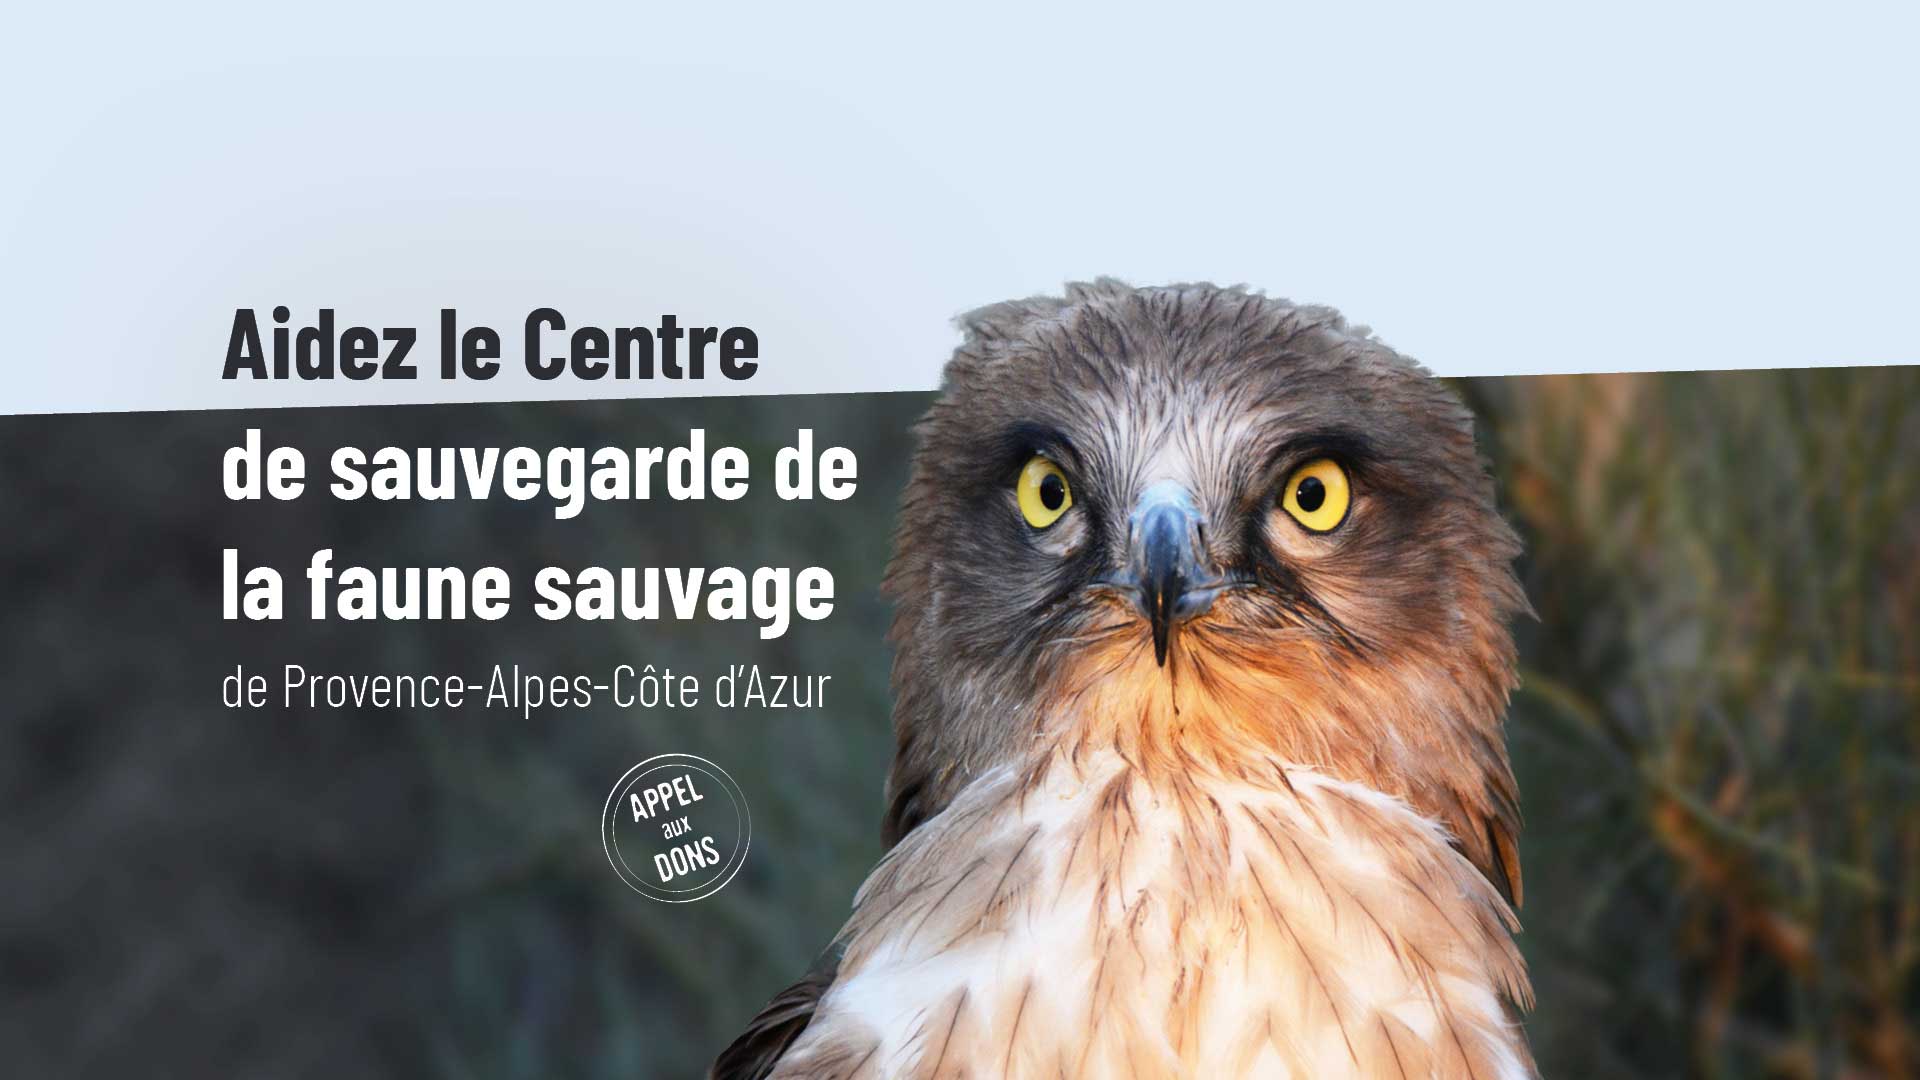 Appel aux dons : Aidez le Centre de sauvegarde de la faune sauvage de Provence-Alpes-Côte d'Azur